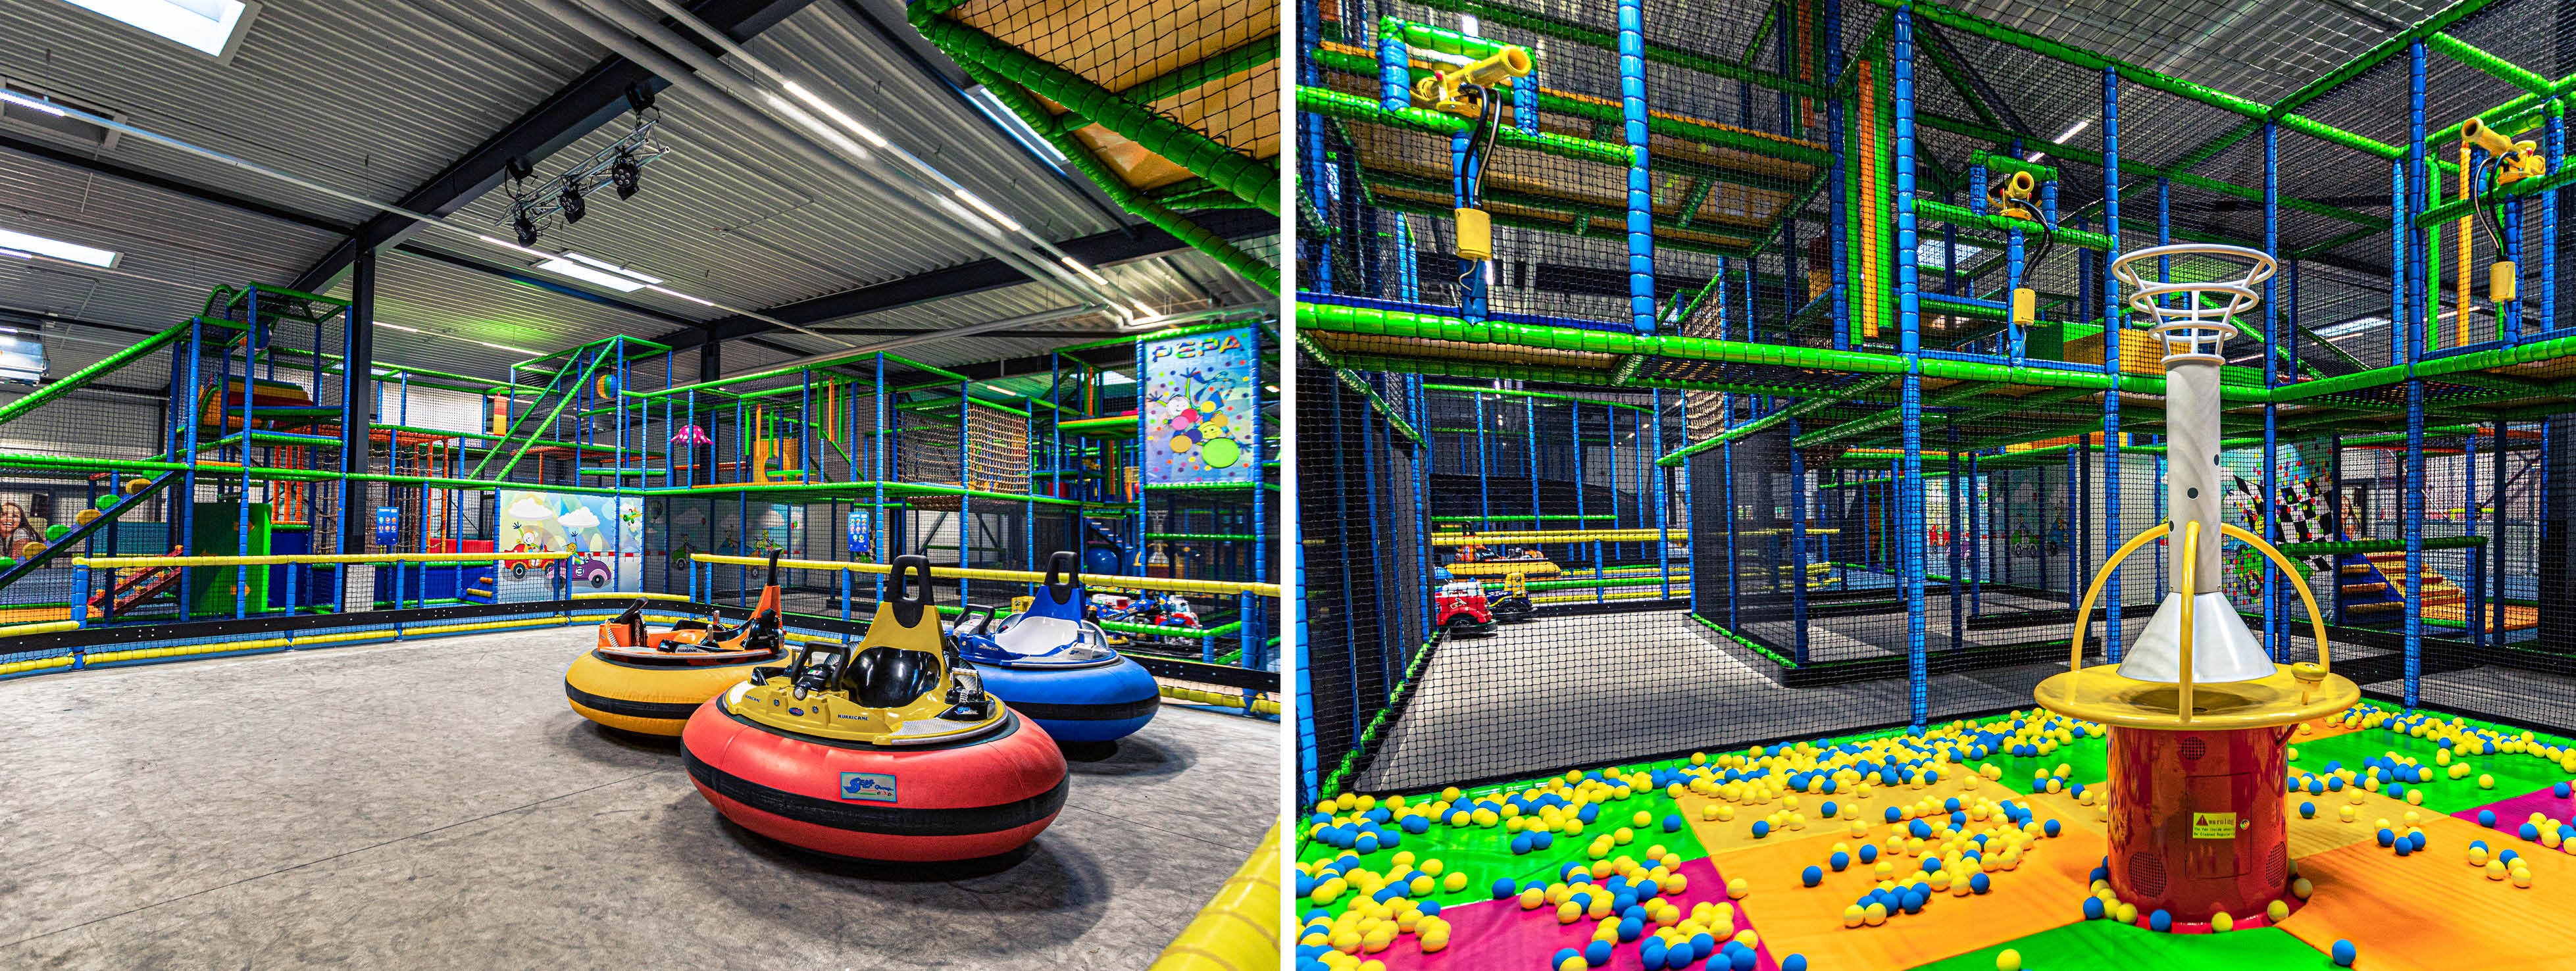 PEPA Funpark Indoor playground